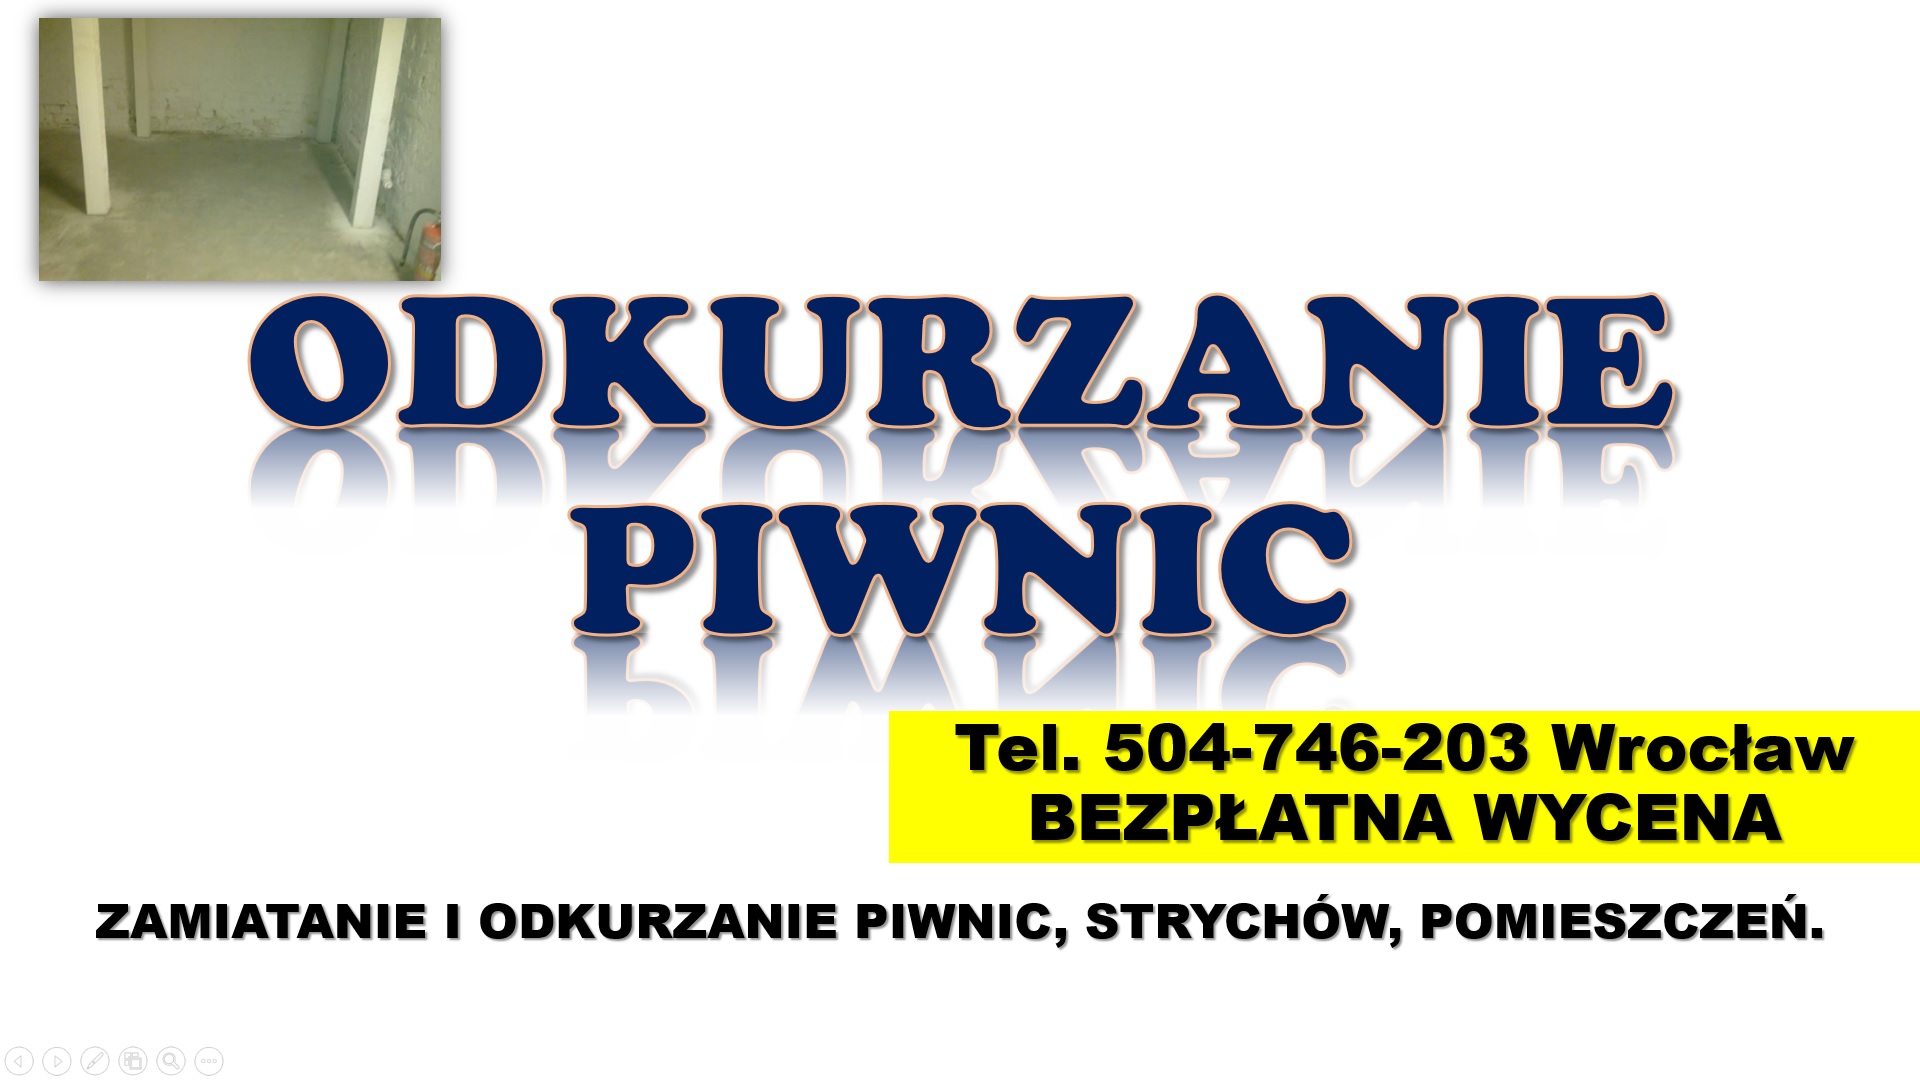 Sprzątanie piwnicy cennik, Wrocław, tel. 504-746-203. Odkurzanie piwnic,